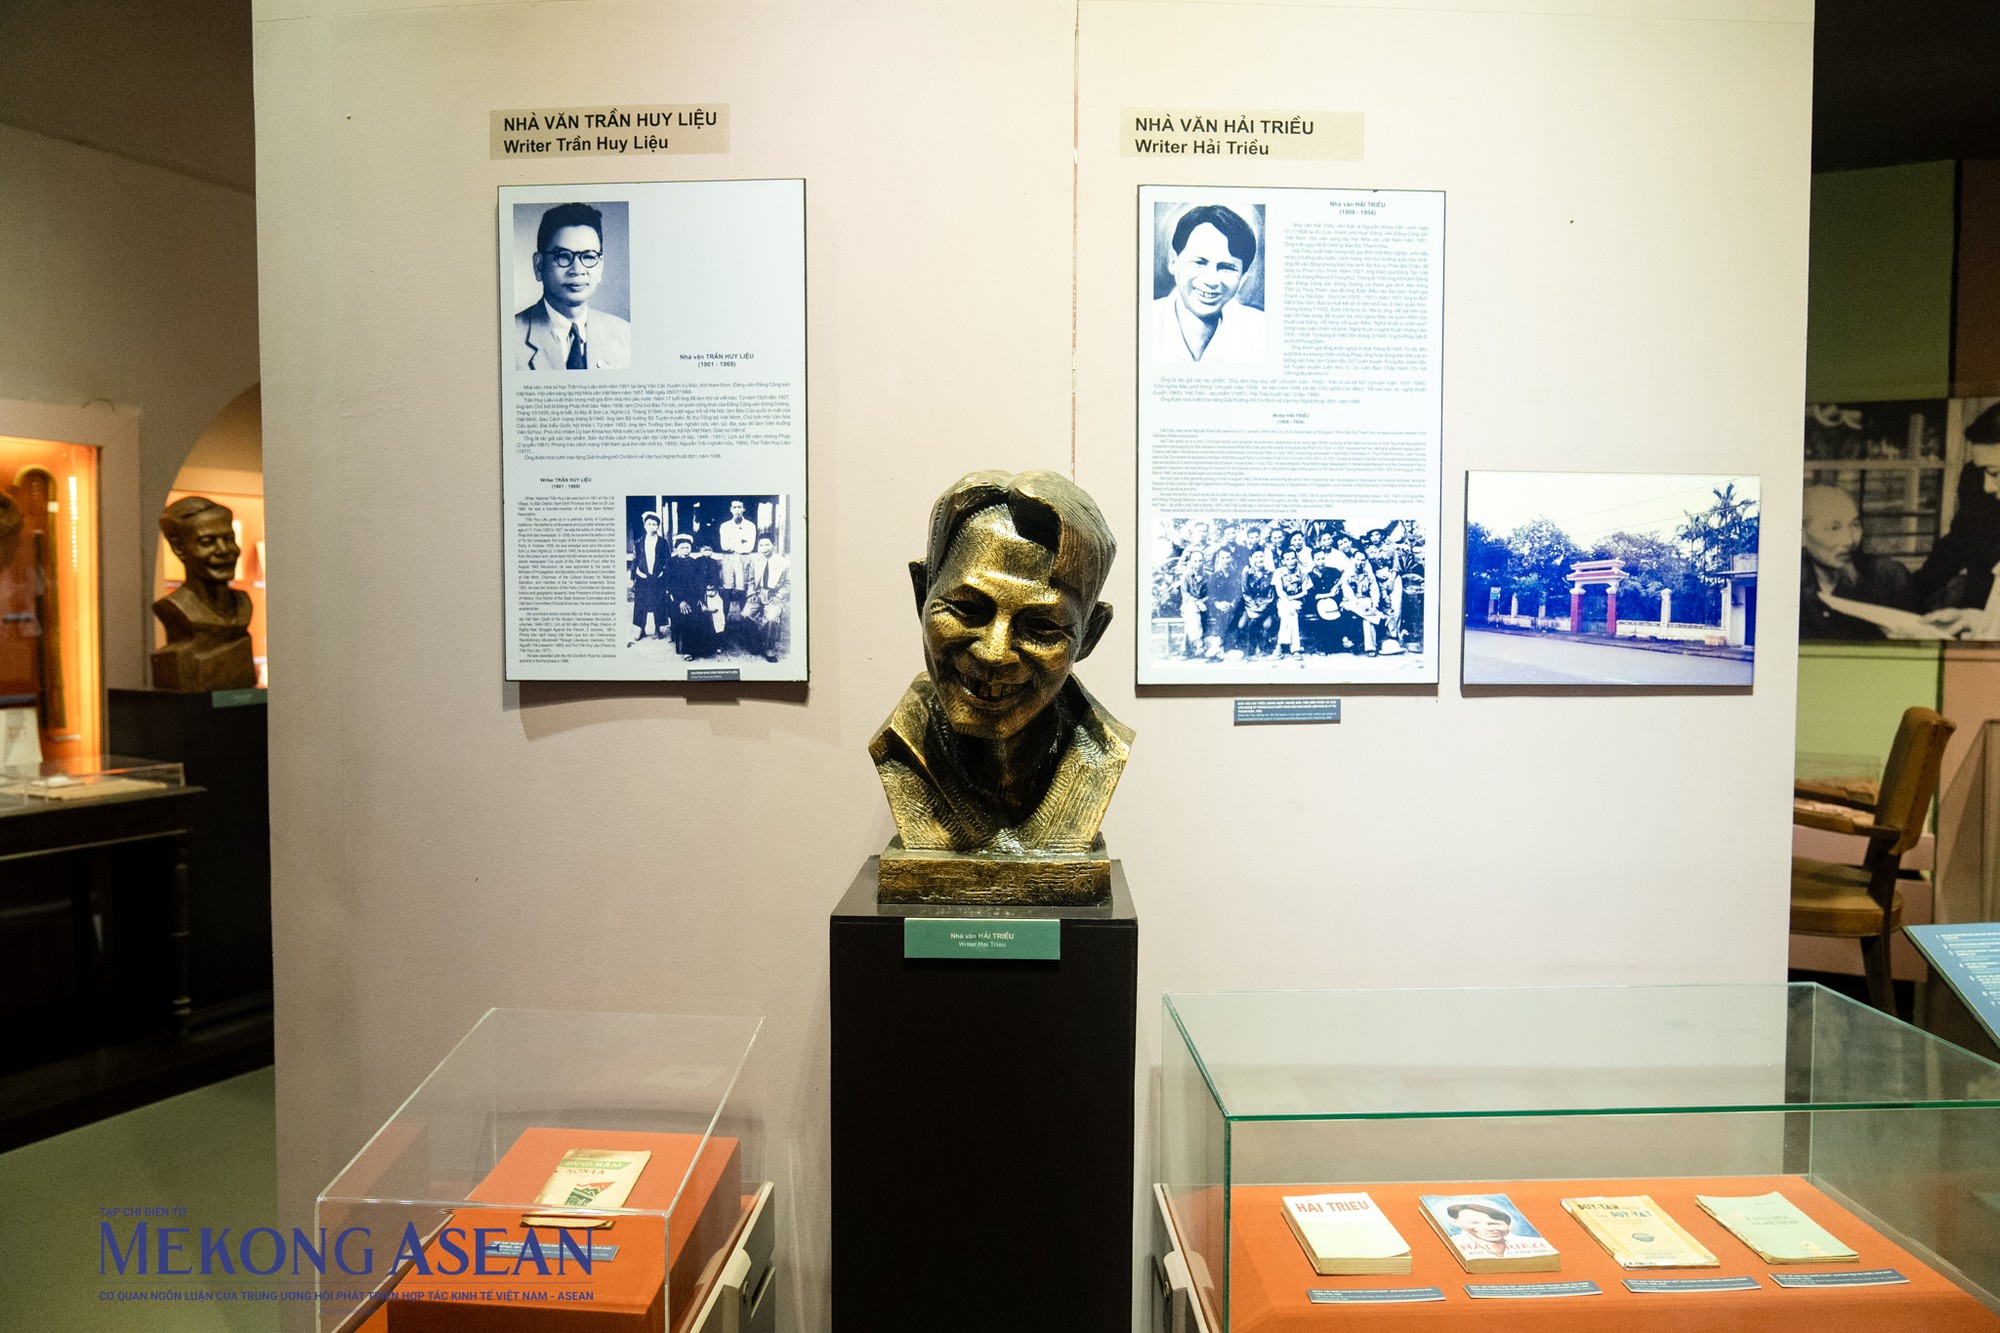 Với không gian văn hóa đặc sắc, chứa đựng nhiều tư liệu lịch sử quý giá nhưng Bảo tàng Văn học Việt Nam hiện vẫn chưa được nhiều người biết đến.